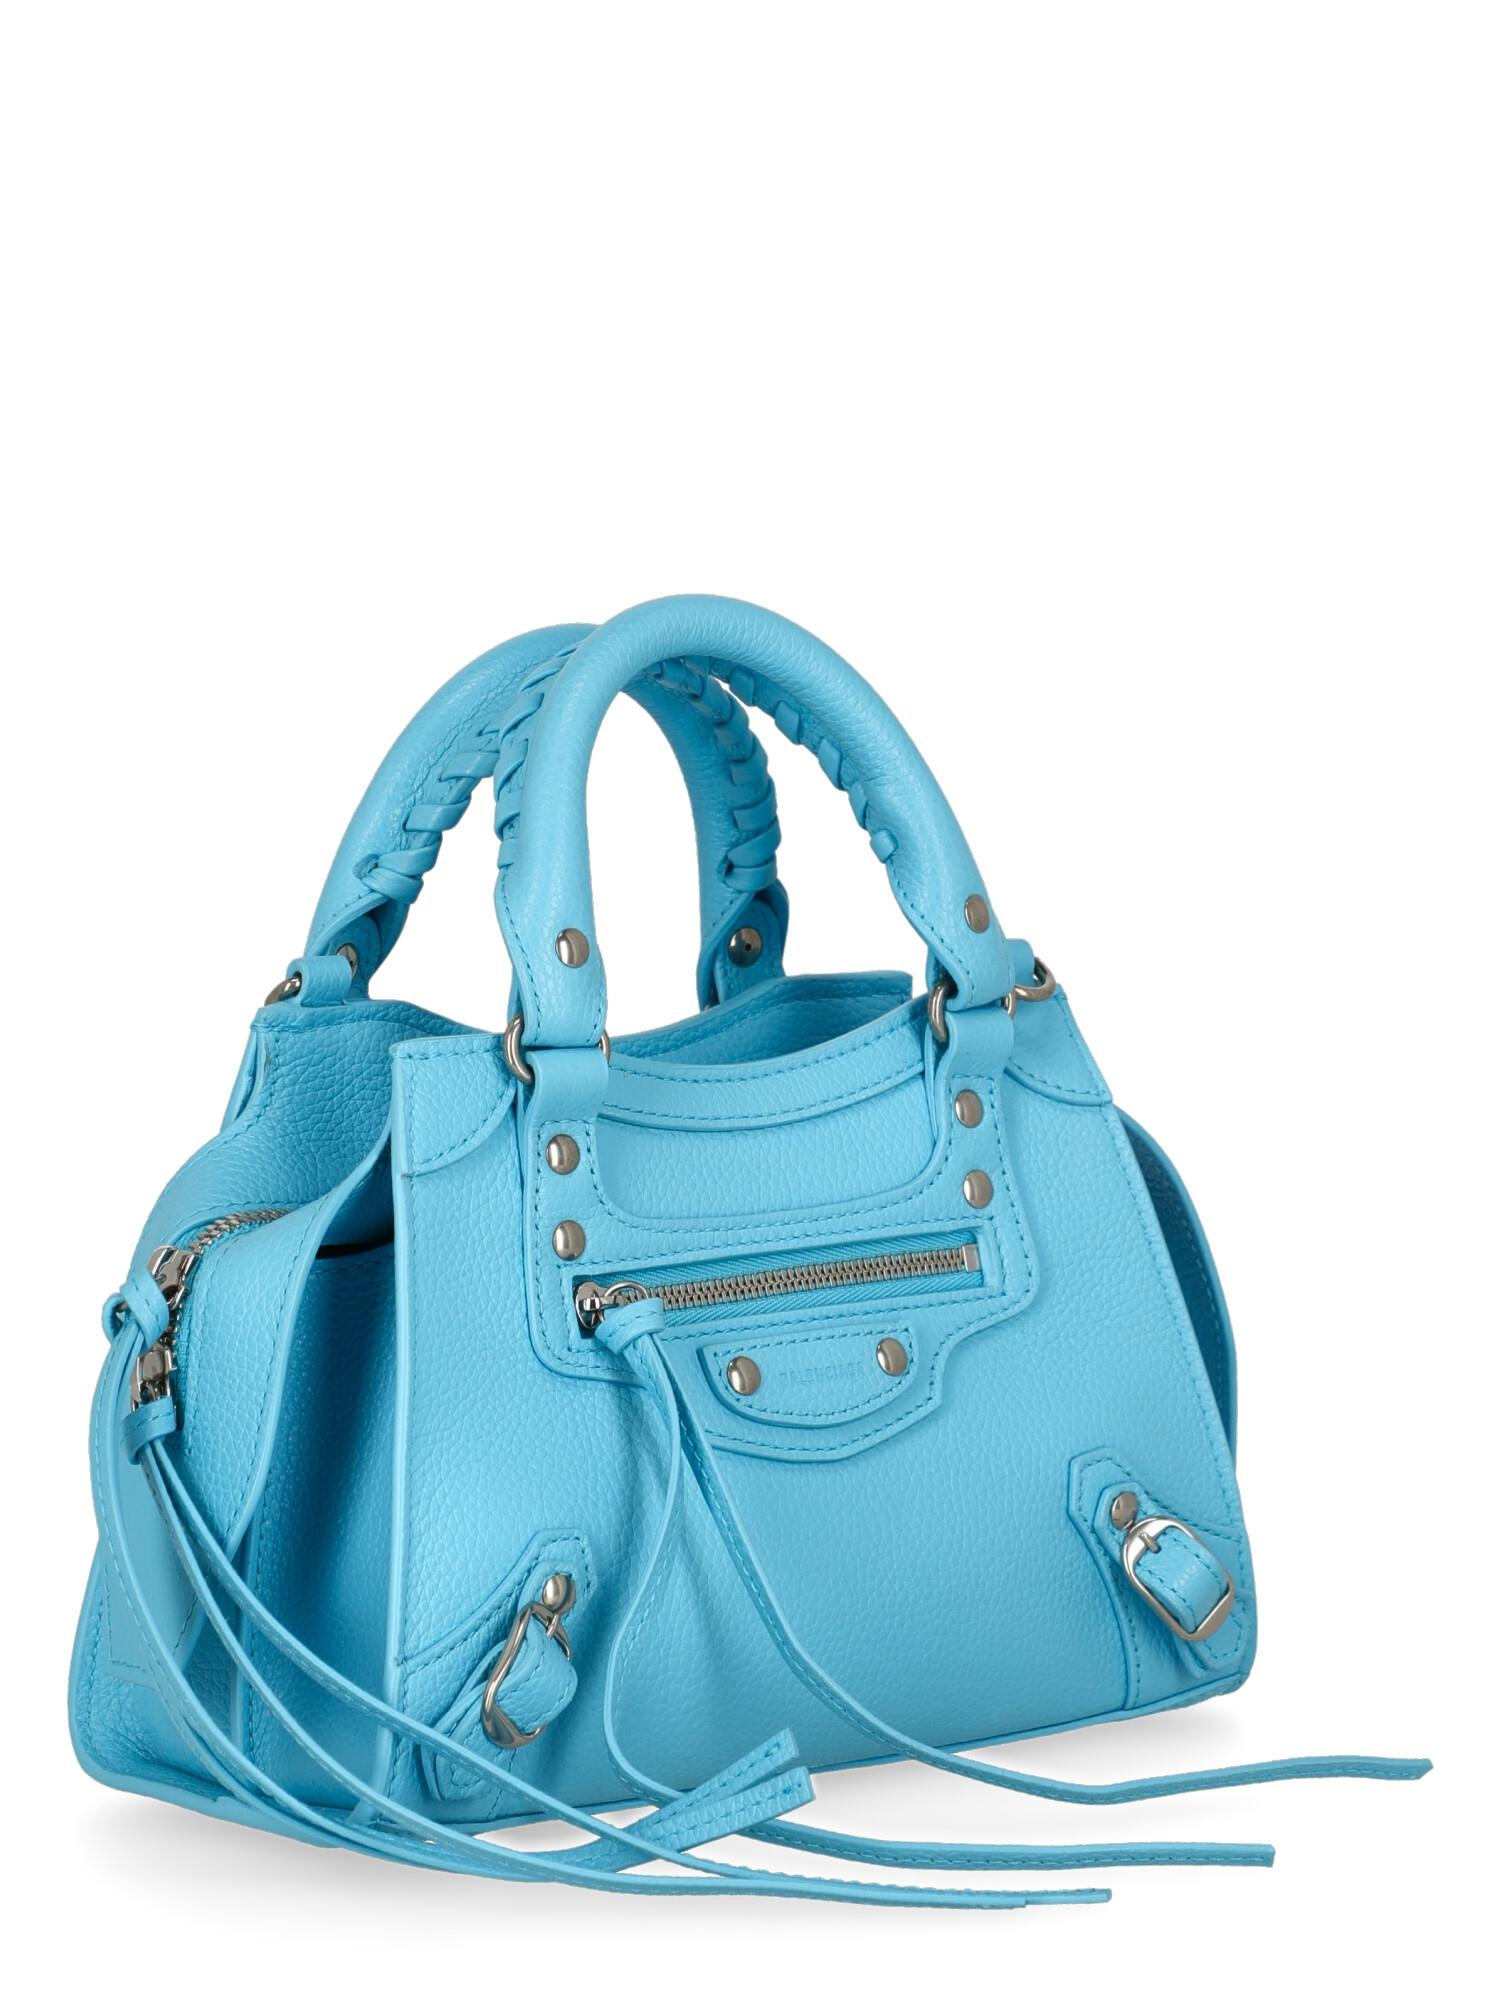 balenciaga women's handbags